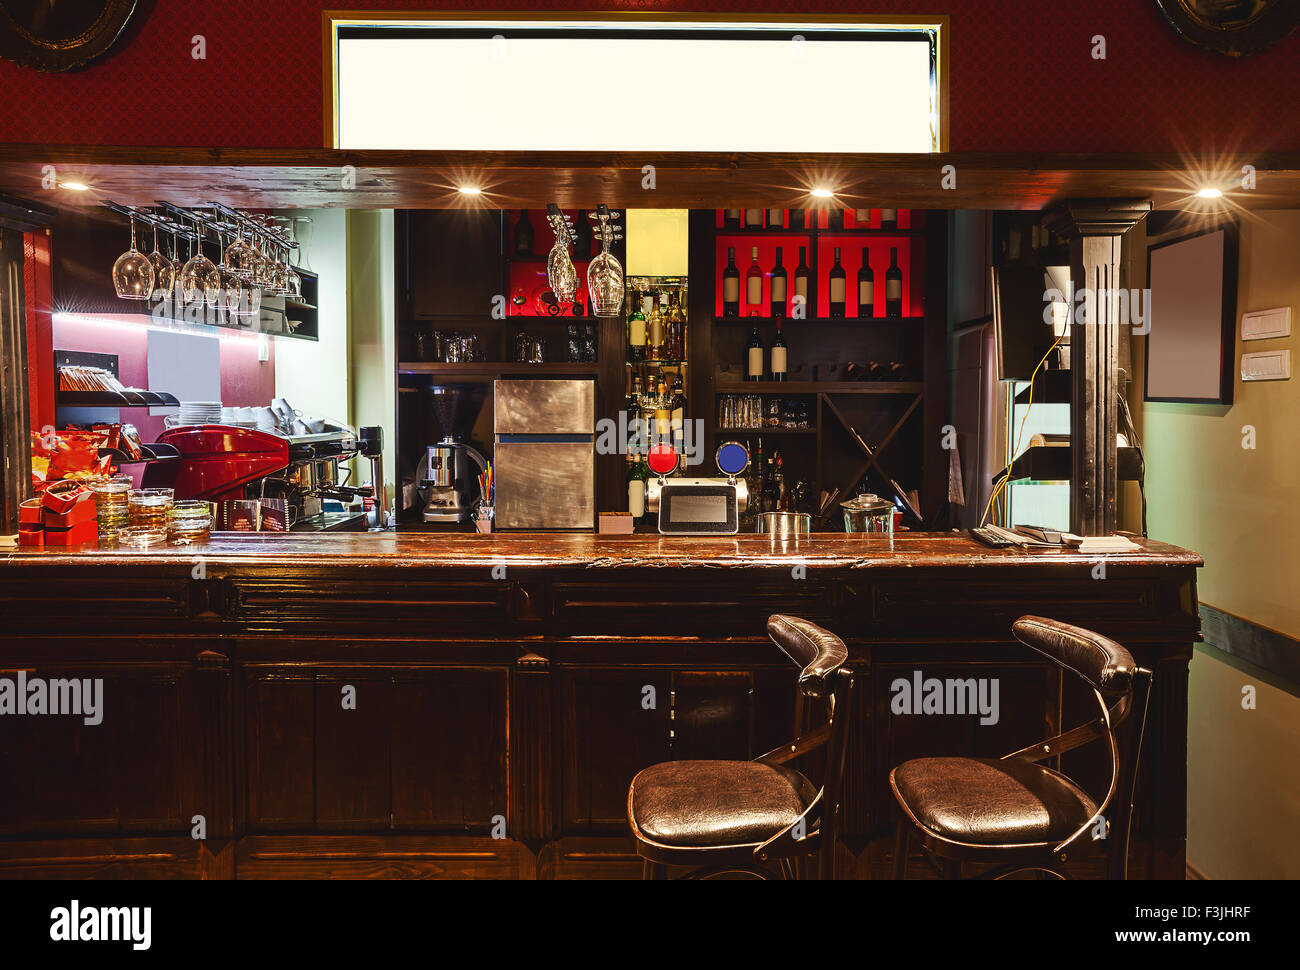 Interno di una moderna caffetteria in stile retrò, scena notturna. Illuminazione, mobili e dettagli architettonici. Foto Stock